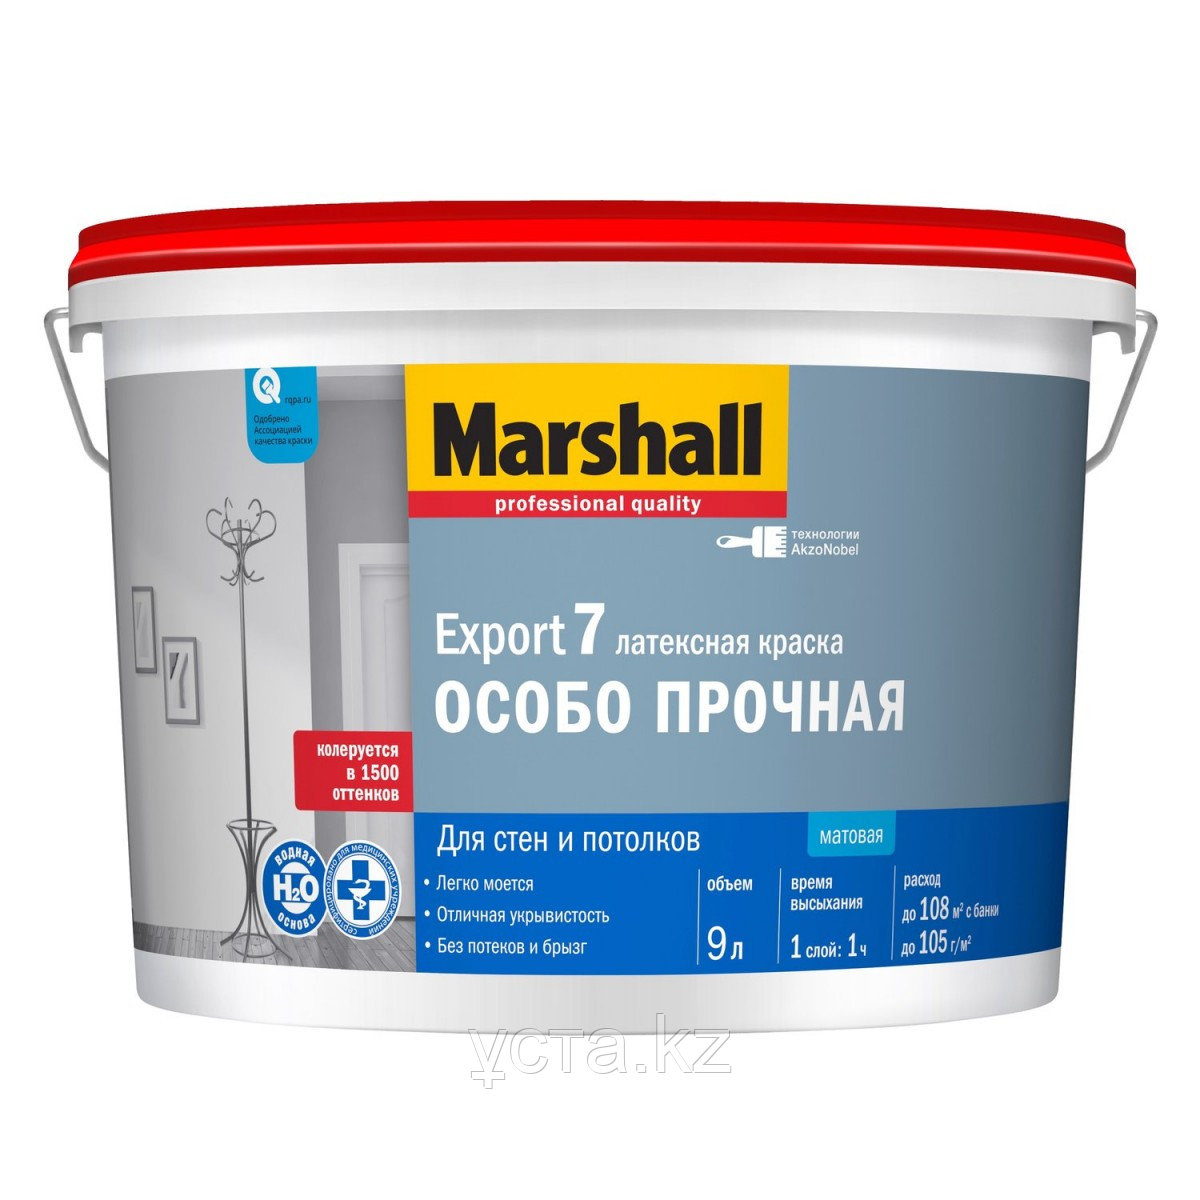 Матовая водно-дисперсионная (латексная) краска для стен и потолков Marshall Export 7